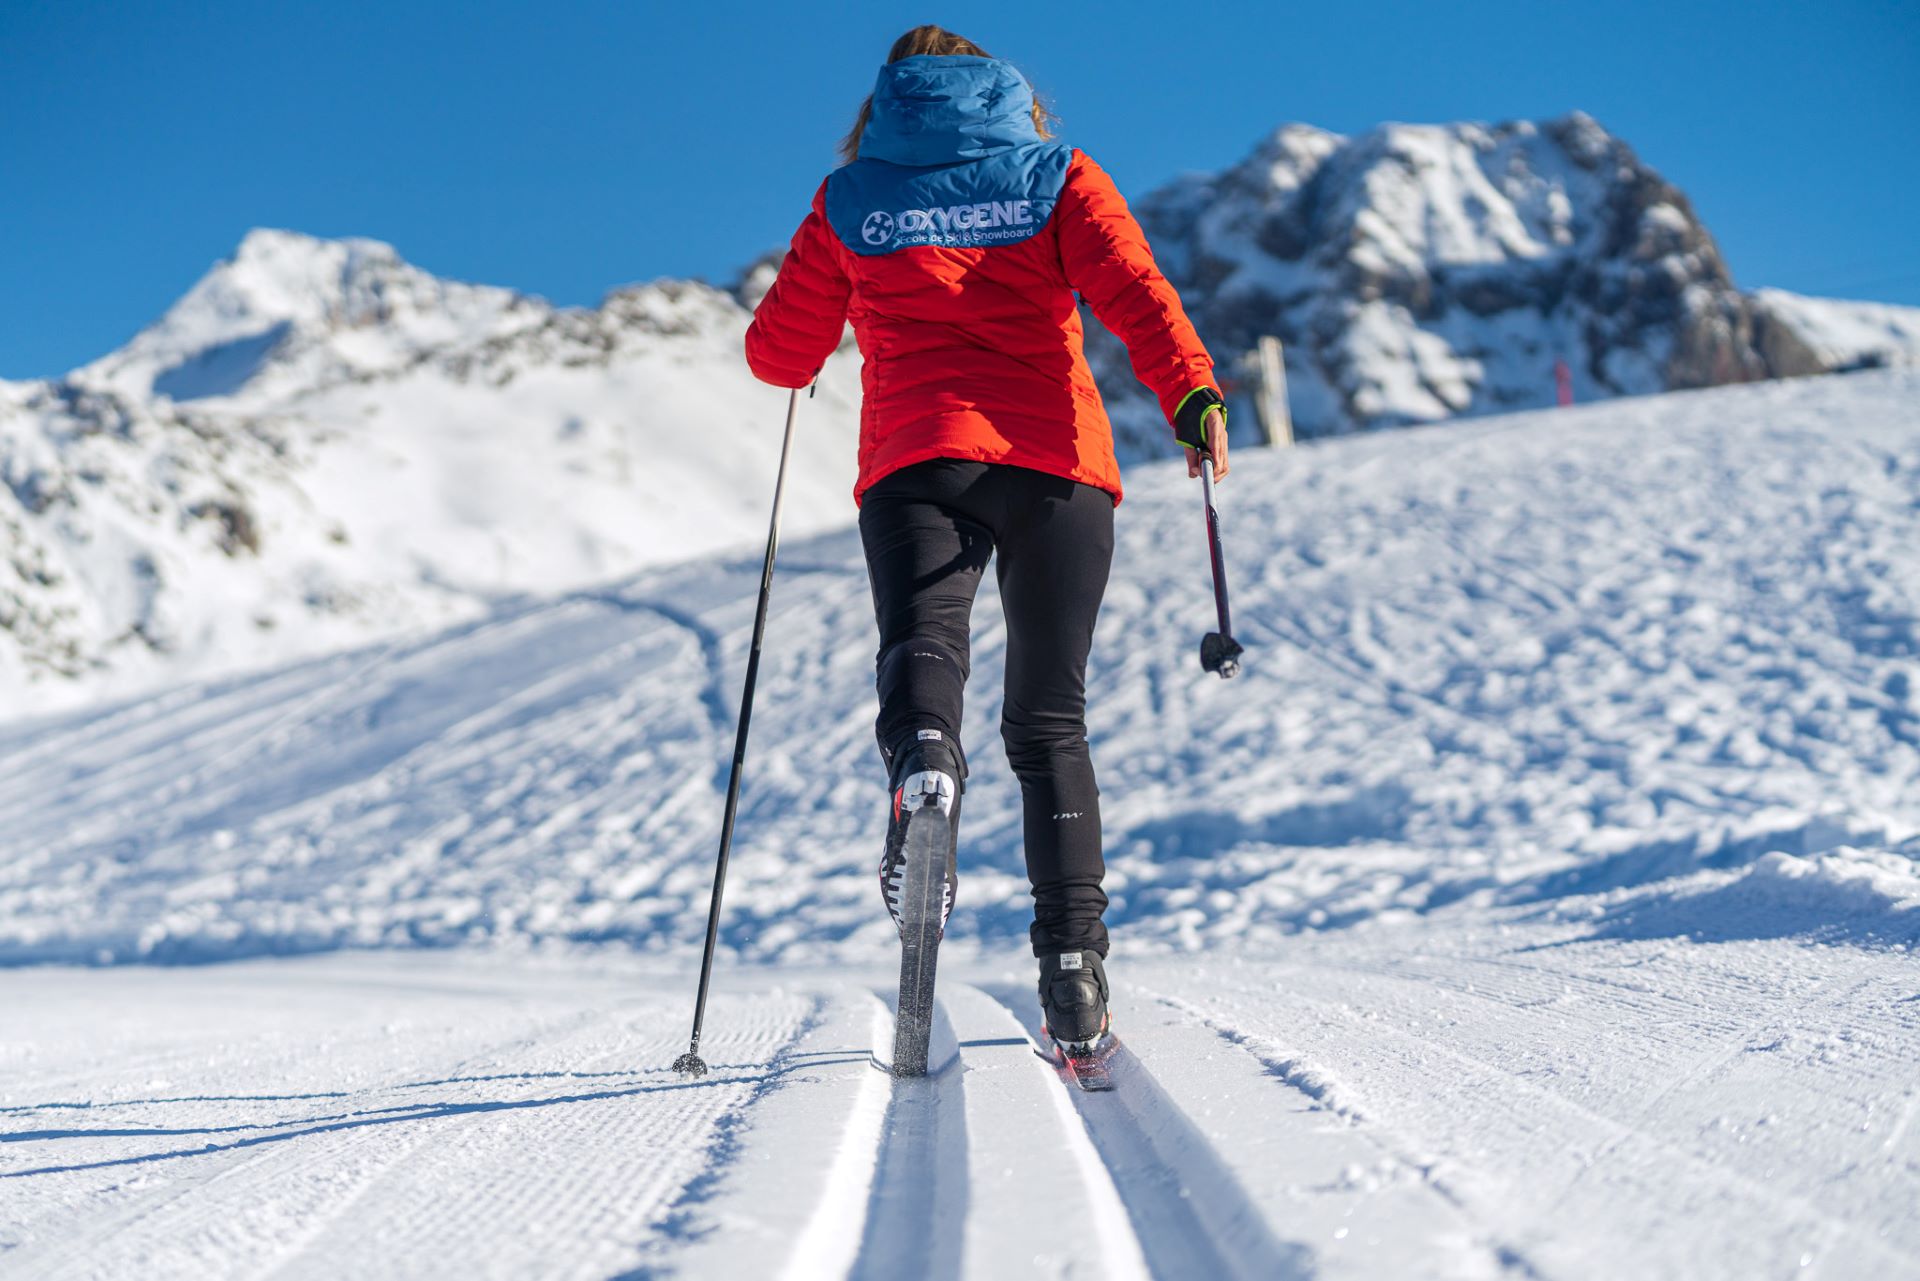 cours-ski-de-fond-montagne-station-de-ski-alpes-oxygene-ski-collection  - © Oxygène ski